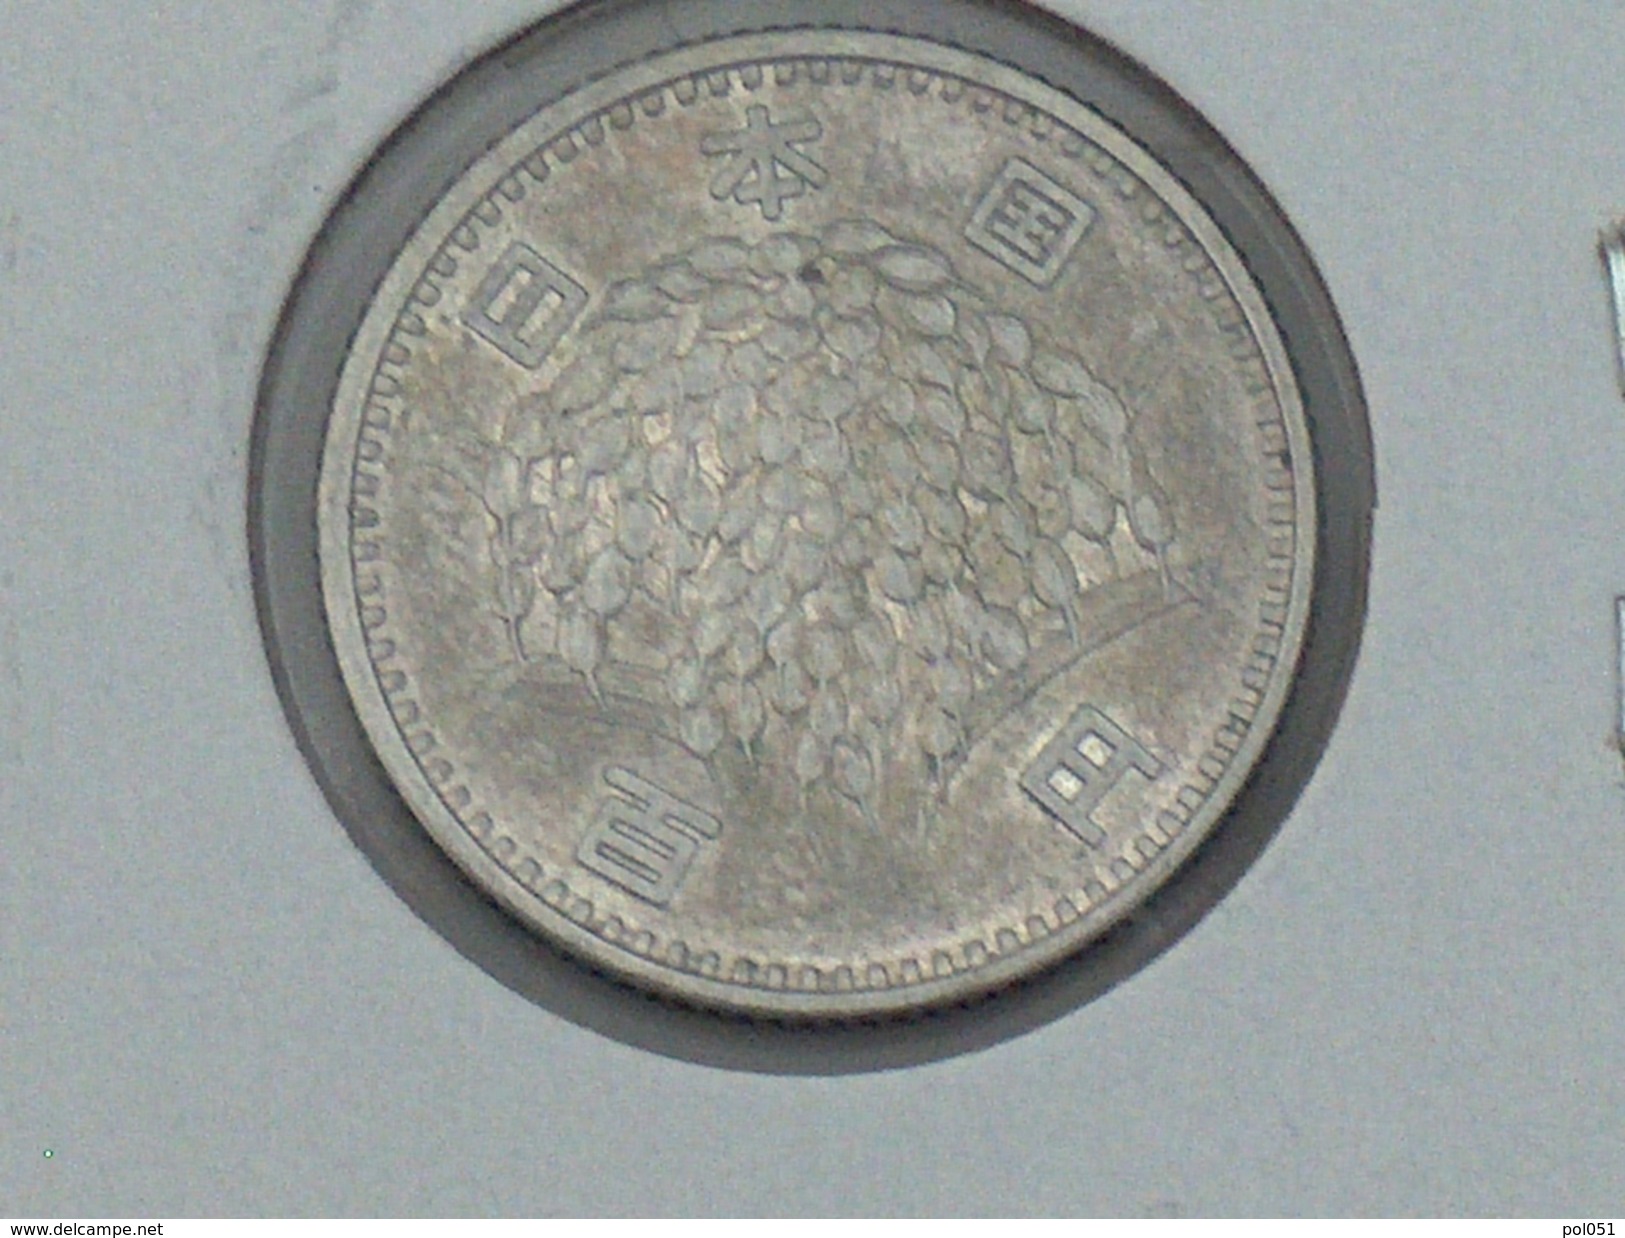 Japon 100 Yen 1960 ARGENT SILVER Japan - Japon